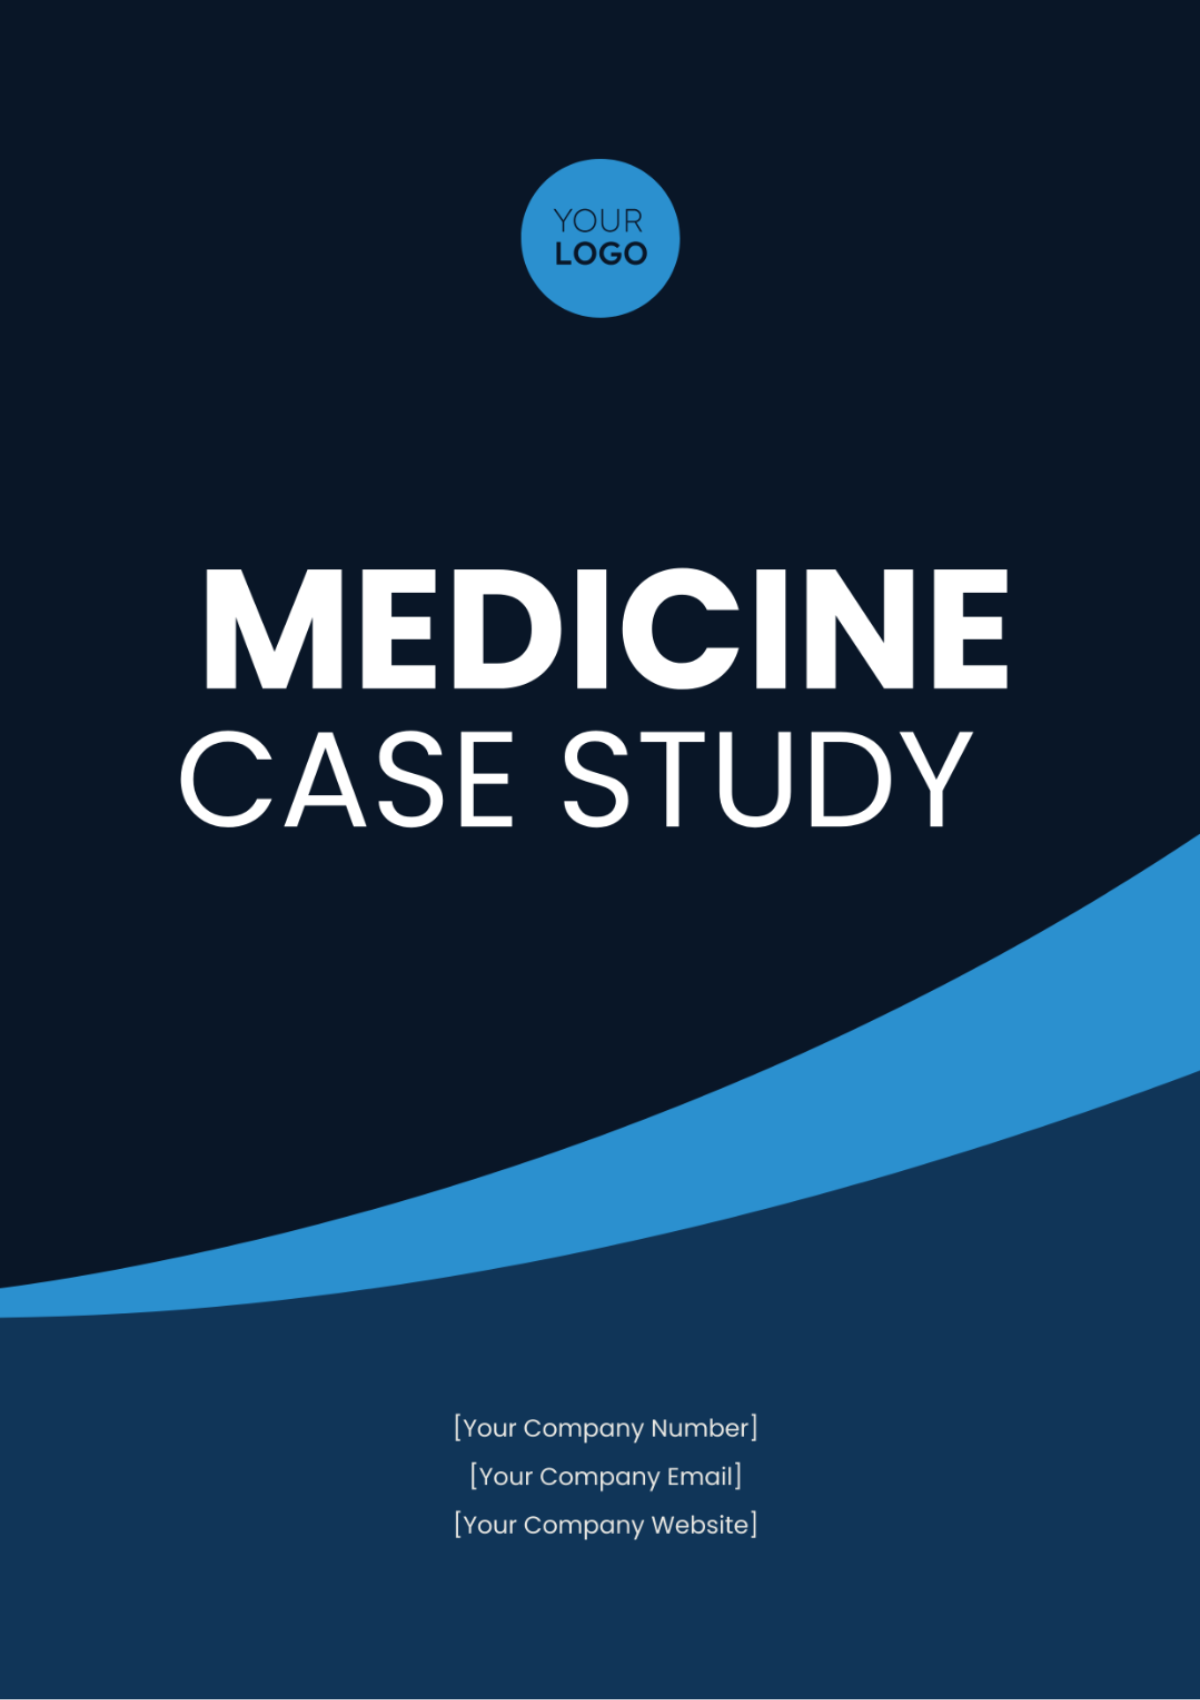 Medicine Case Study Template